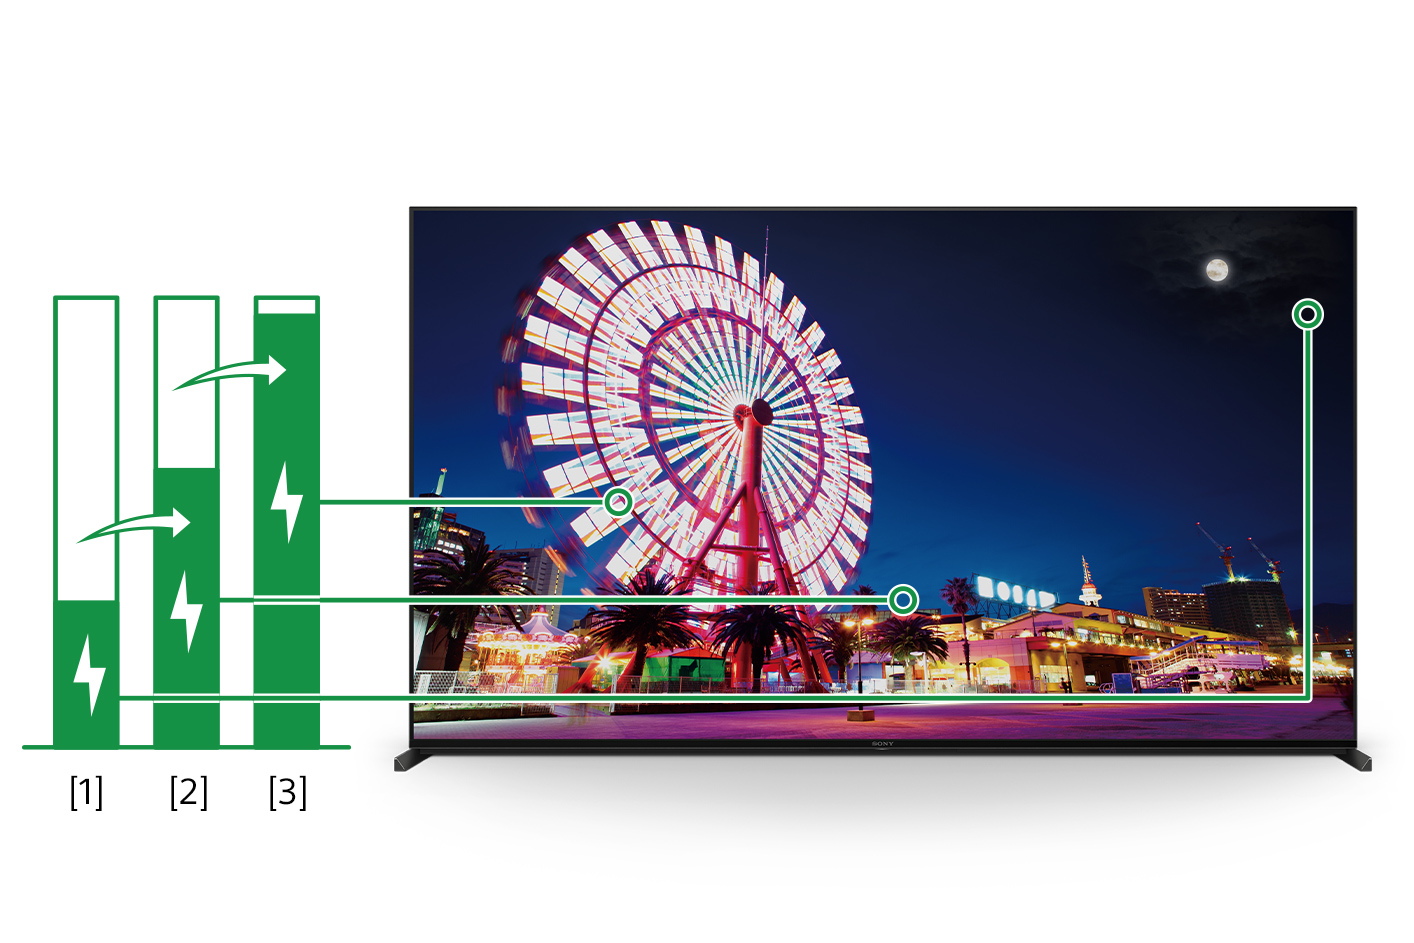 テレビ画面の画像と、画面上の画像の明るさに応じてエネルギー消費量を段階的に示す3つの棒グラフ。